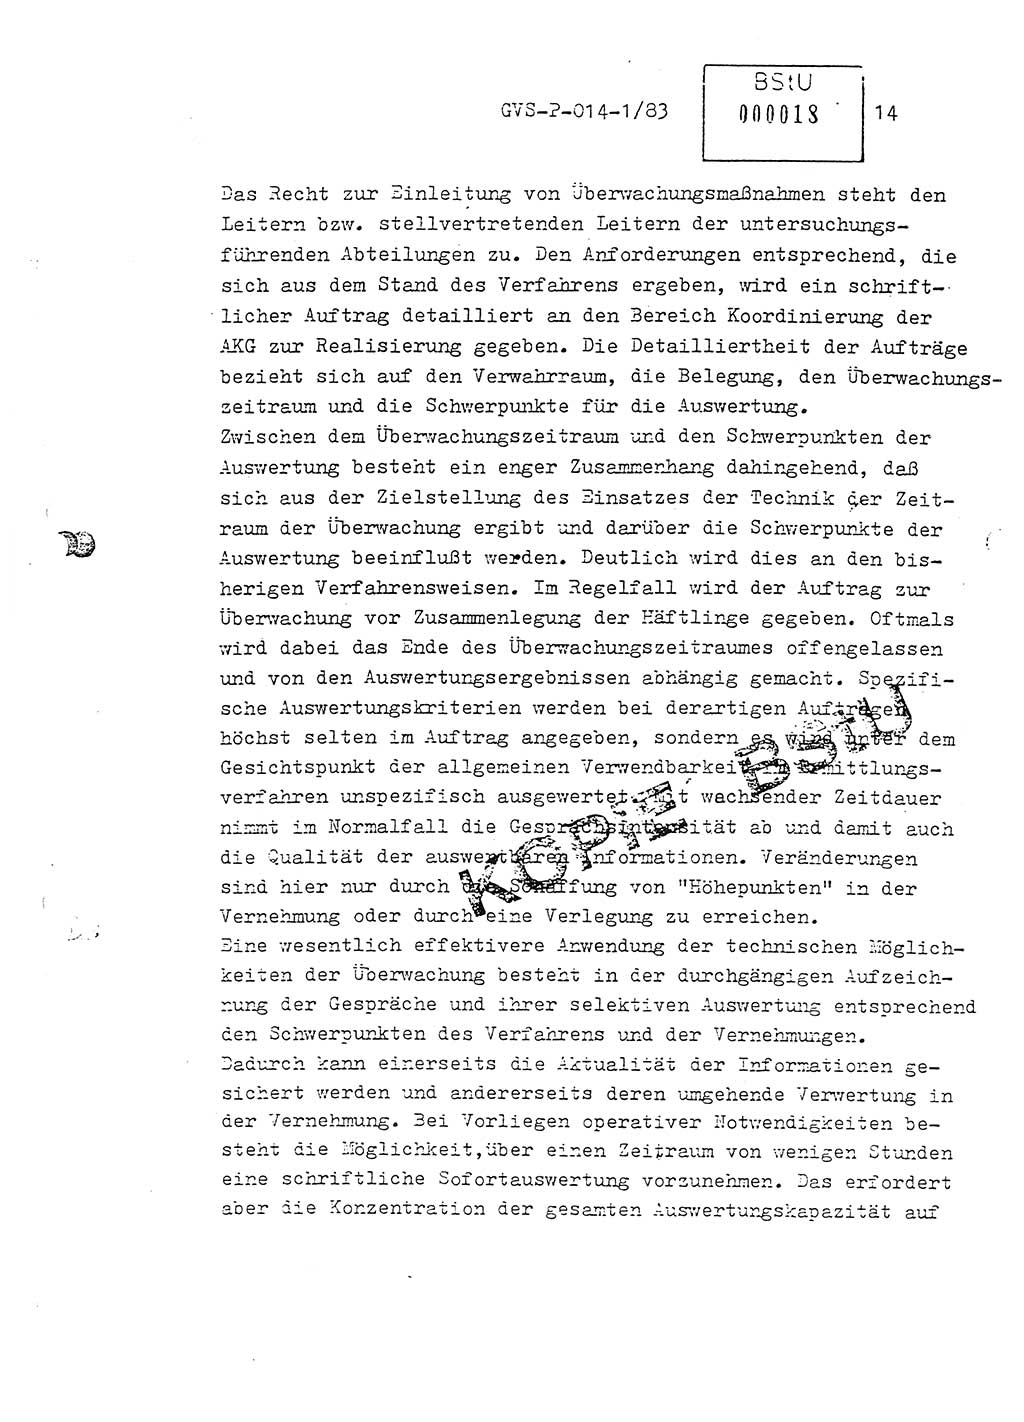 Fachschulabschlußarbeit Leutnant Dirk Autentrieb (HA Ⅸ/AKG), Ministerium für Staatssicherheit (MfS) [Deutsche Demokratische Republik (DDR)], Hauptabteilung (HA) Ⅸ, Geheime Verschlußsache (GVS) P-014-1/83, Berlin 1983, Blatt 14 (FS-Abschl.-Arb. MfS DDR HA Ⅸ GVS P-014-1/83 1983, Bl. 14)